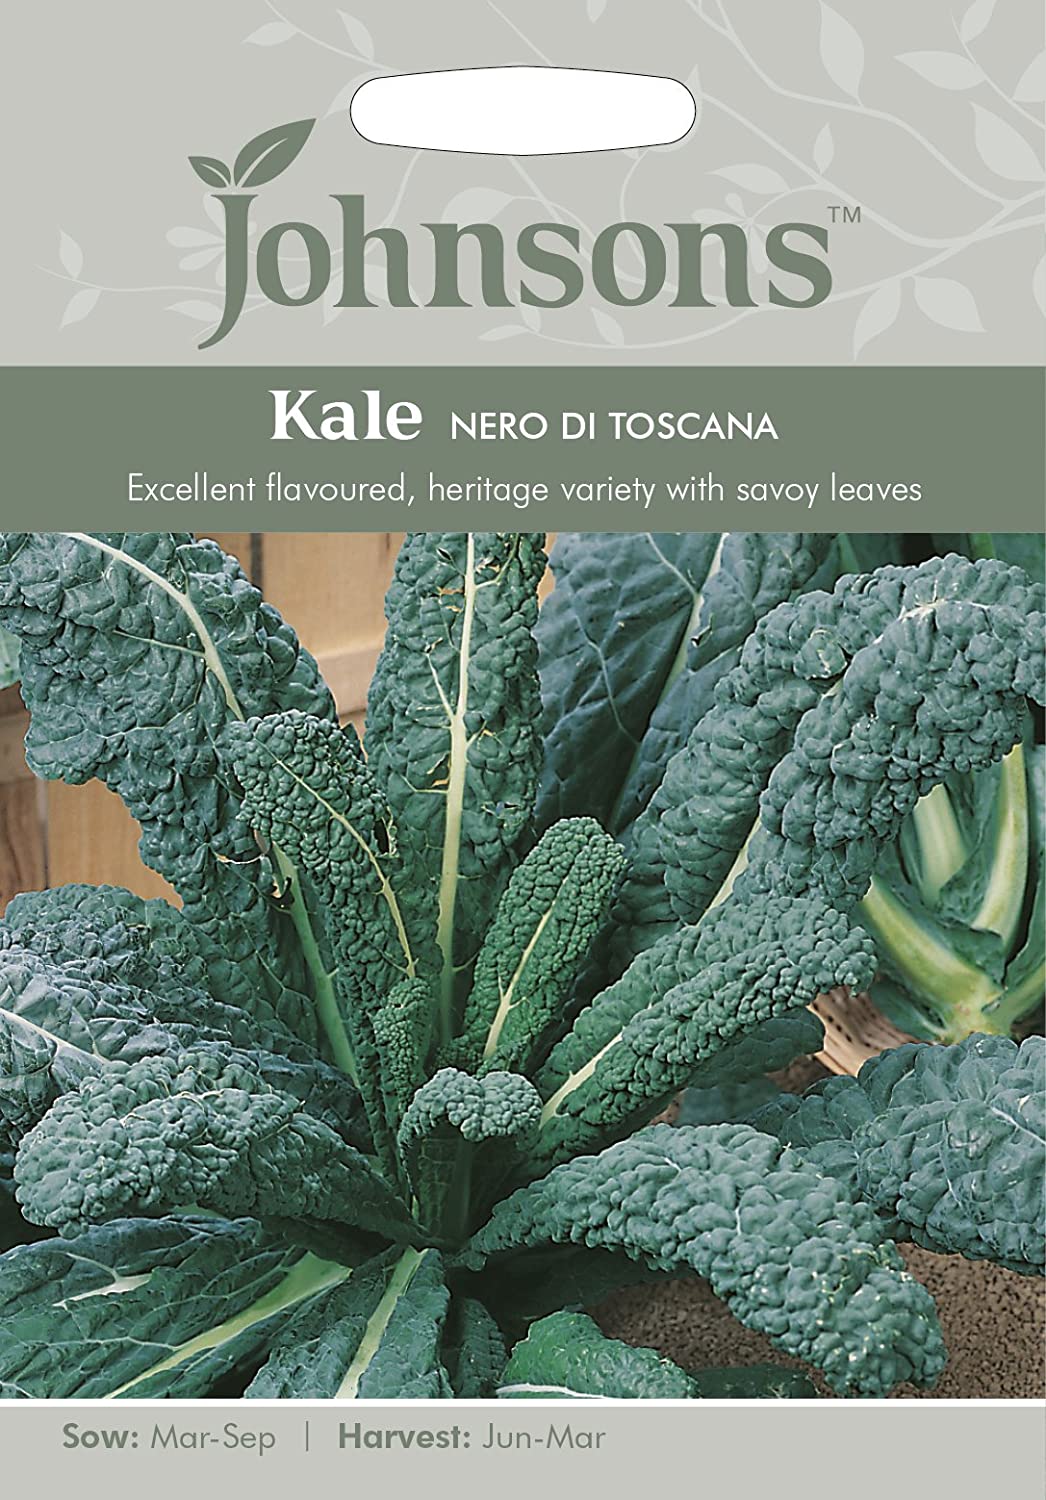 Johnsons Kale Nero